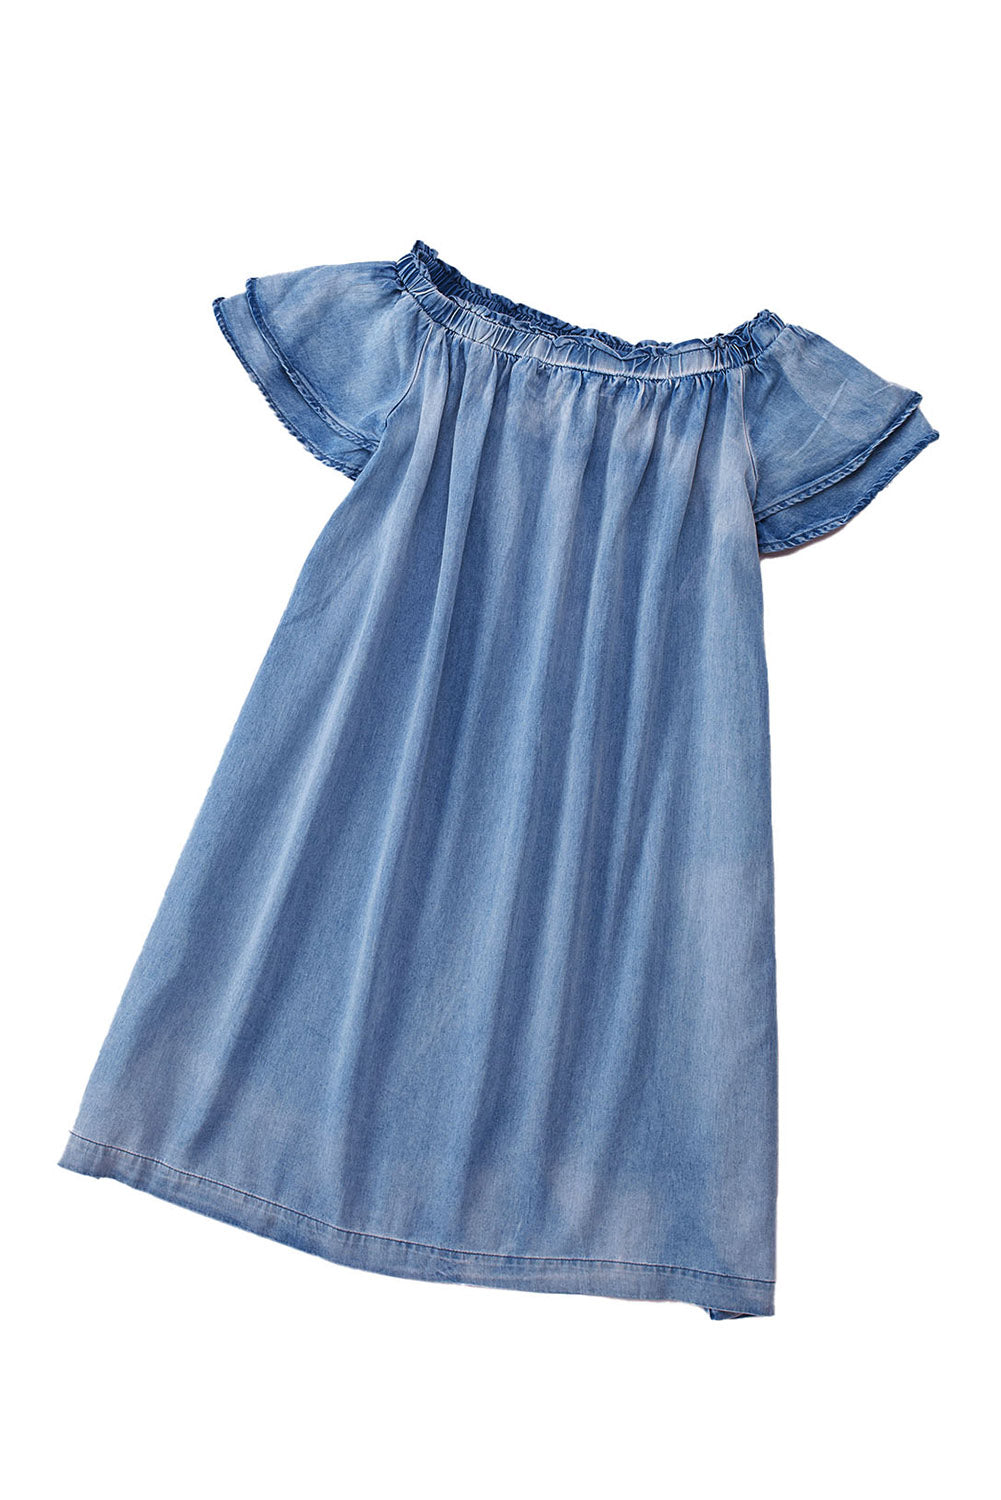 Himmelblaues, schulterfreies Chambray-Kleid mit Rüschenärmeln